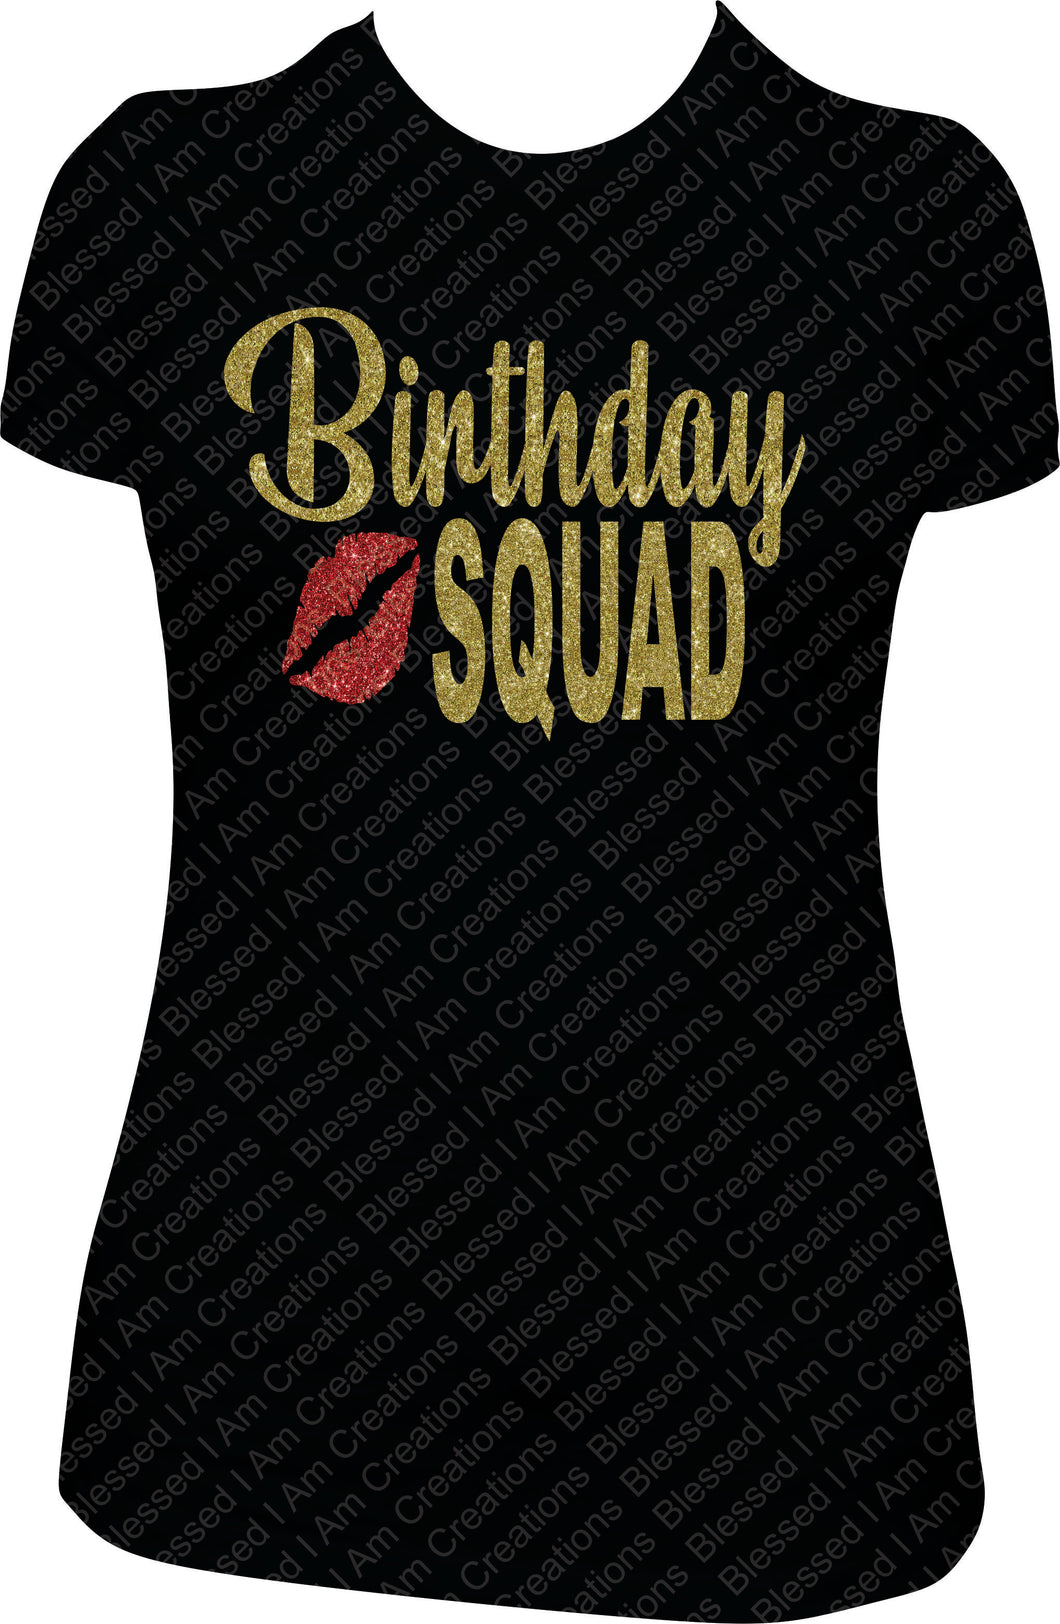 Birthday Squad Shirt, Birthday Crew Shirt, Bling Birthday Squad Shirt